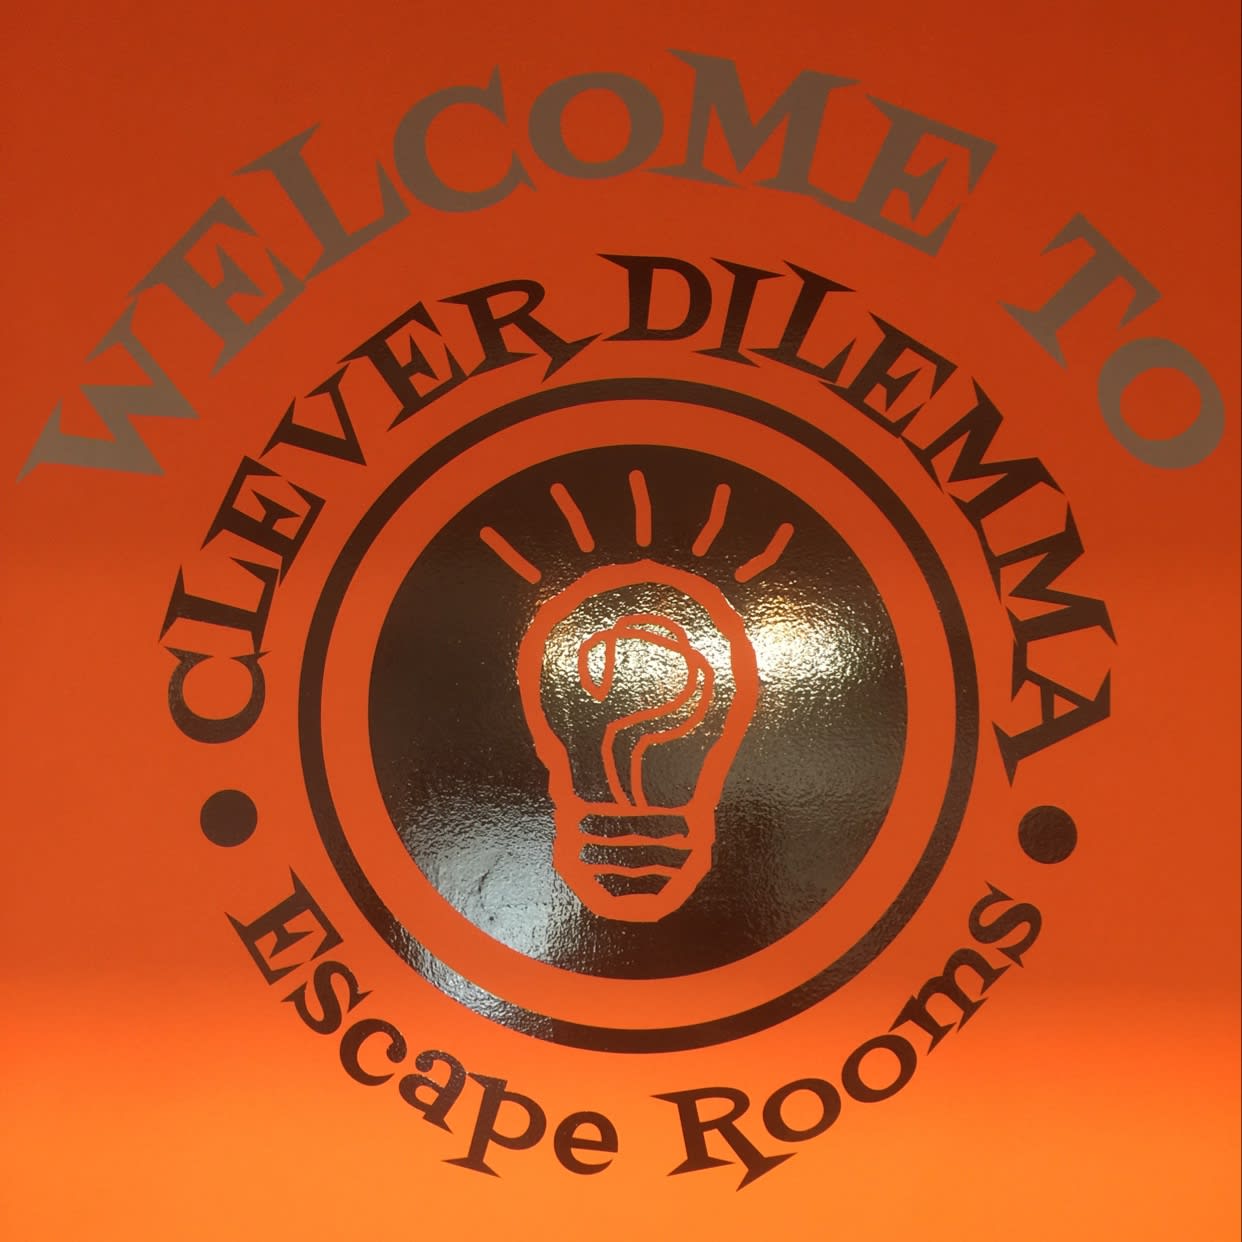 Images Clever Dilemma Escape Rooms